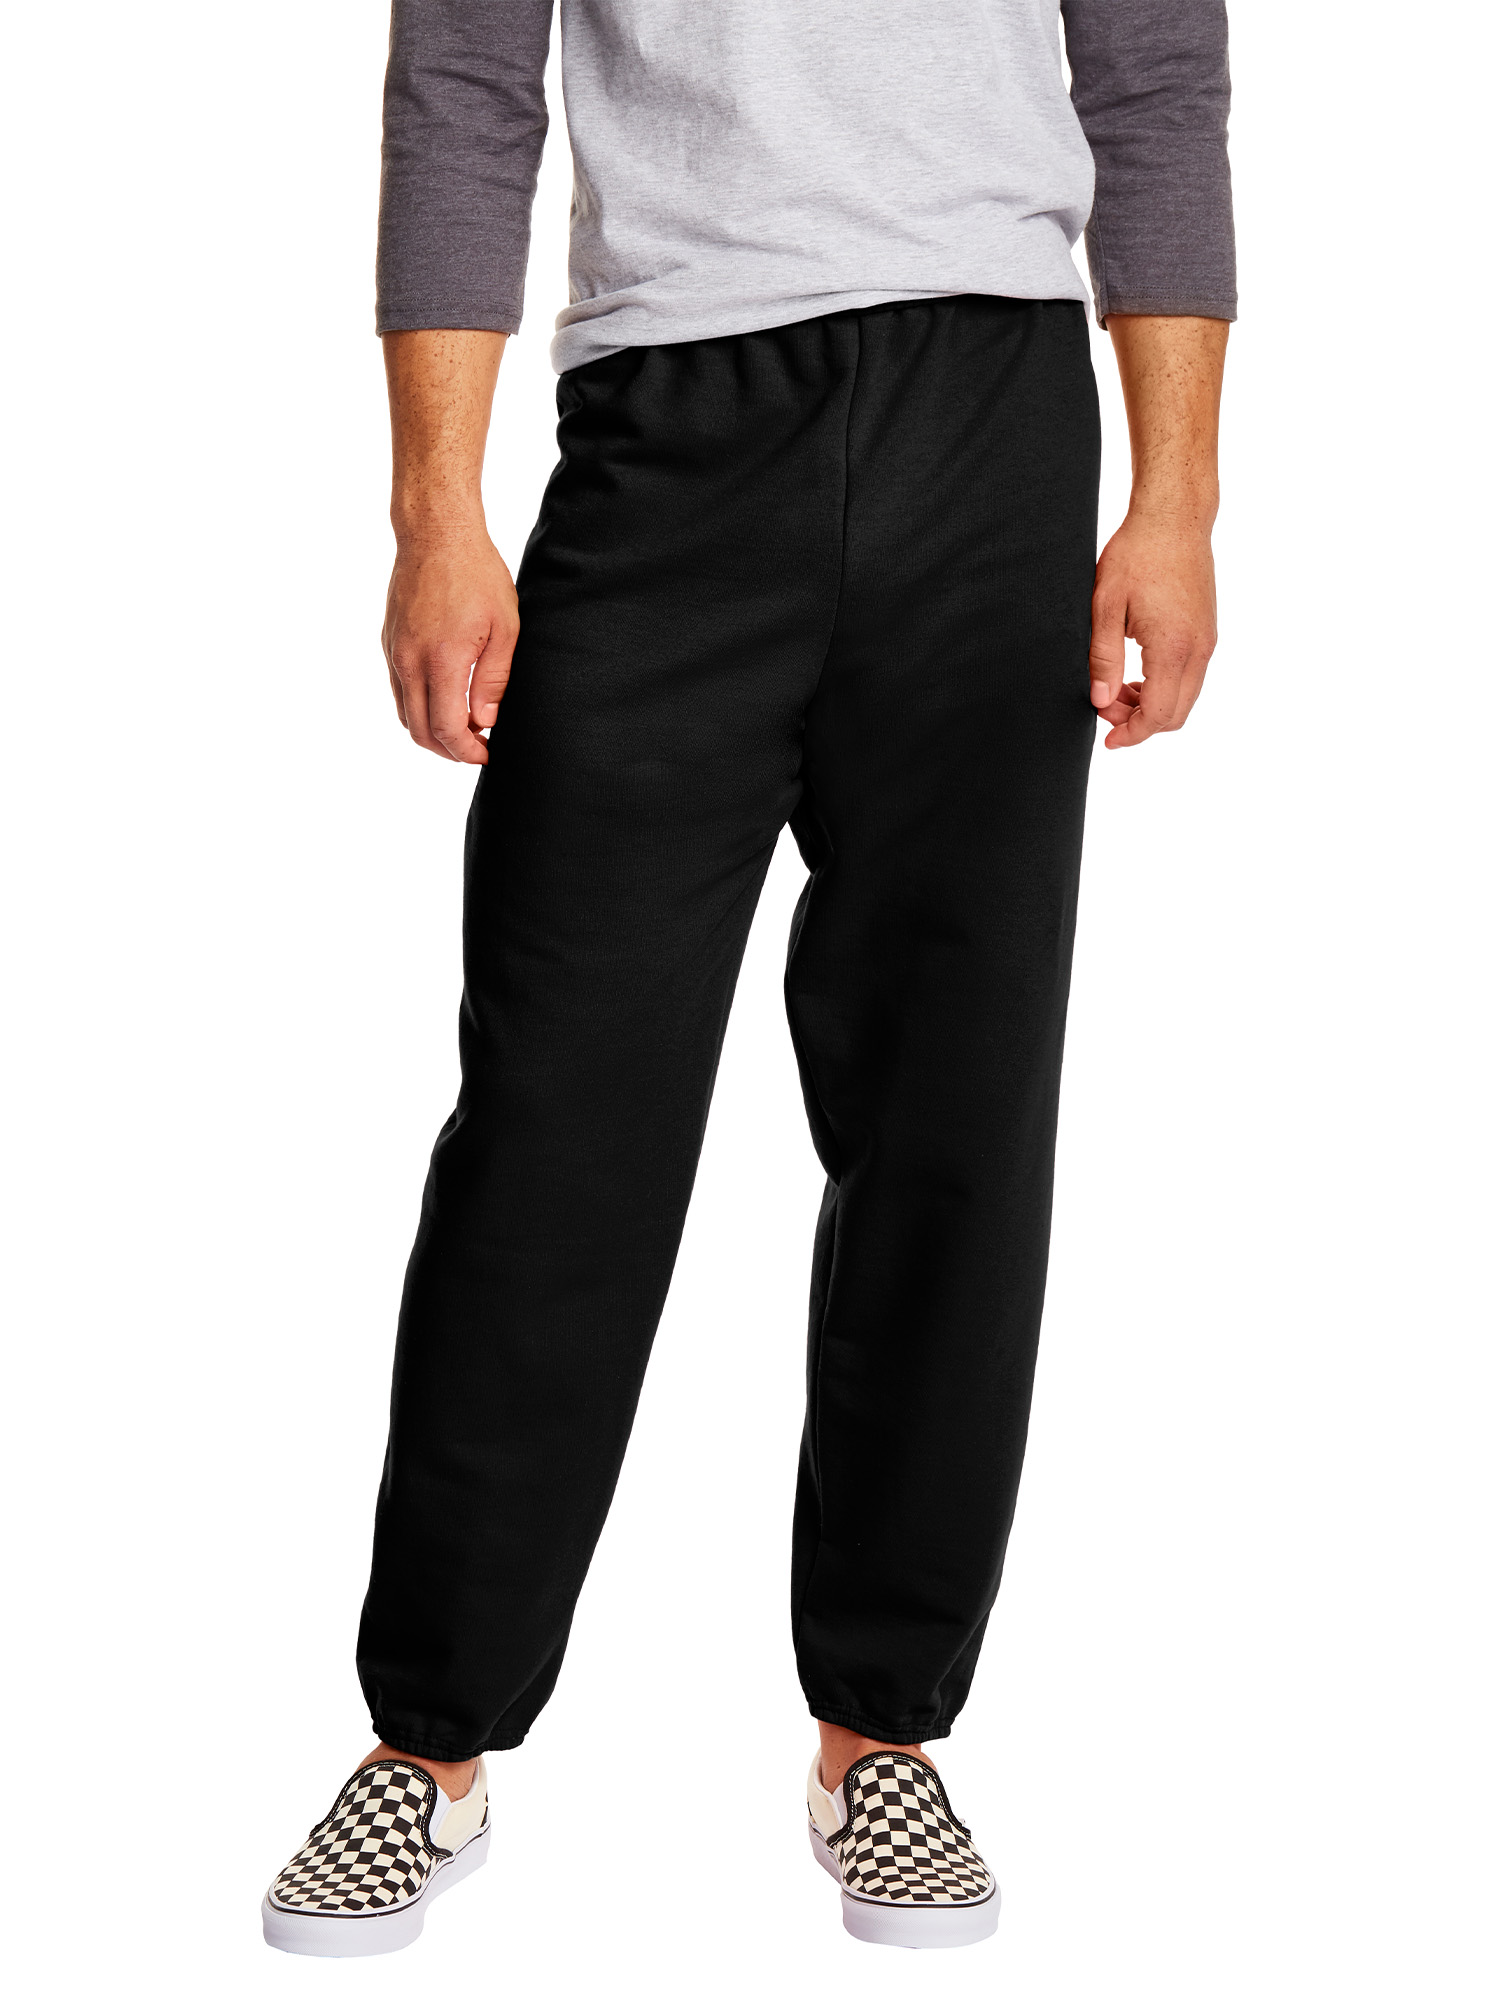 Hanes Men's and Big Men's EcoSmart Fleece Sweatpants, up to Size 3XL - image 1 of 7